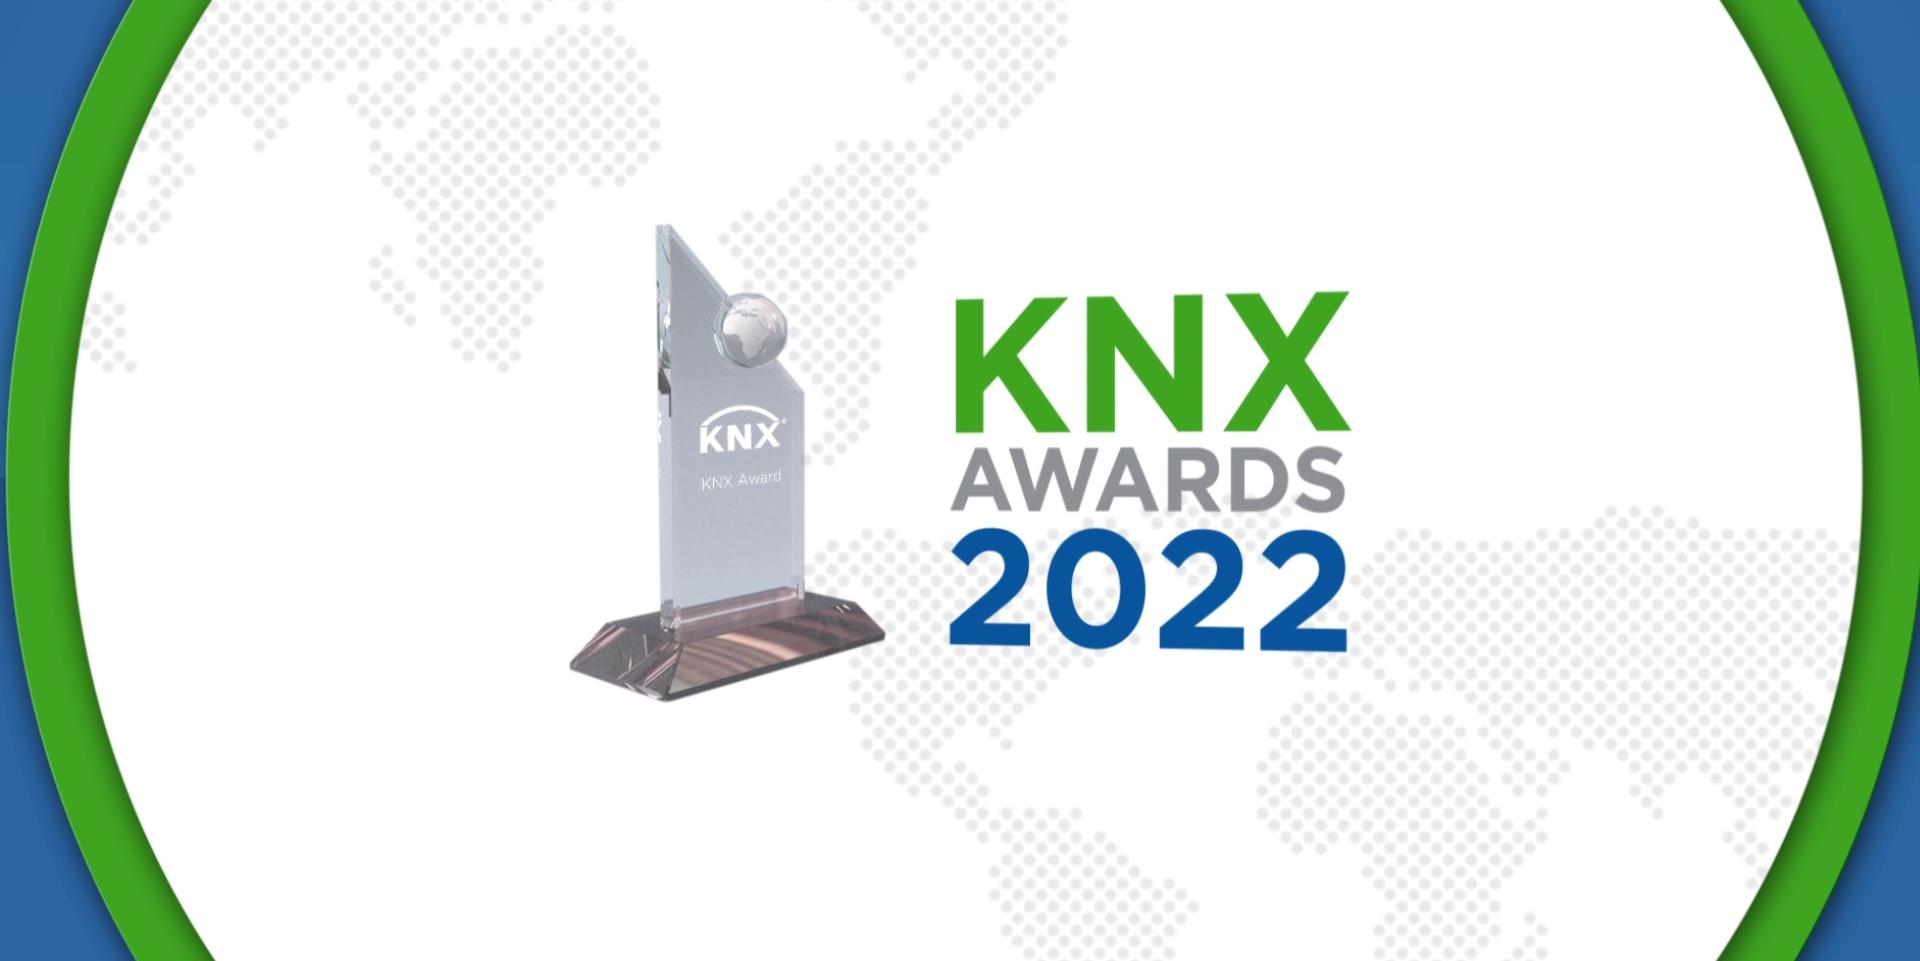 KNX Awards 2022: la 14a edizioni delle celebrazioni per i migliori utilizzi innovativi di KNX nel mondo